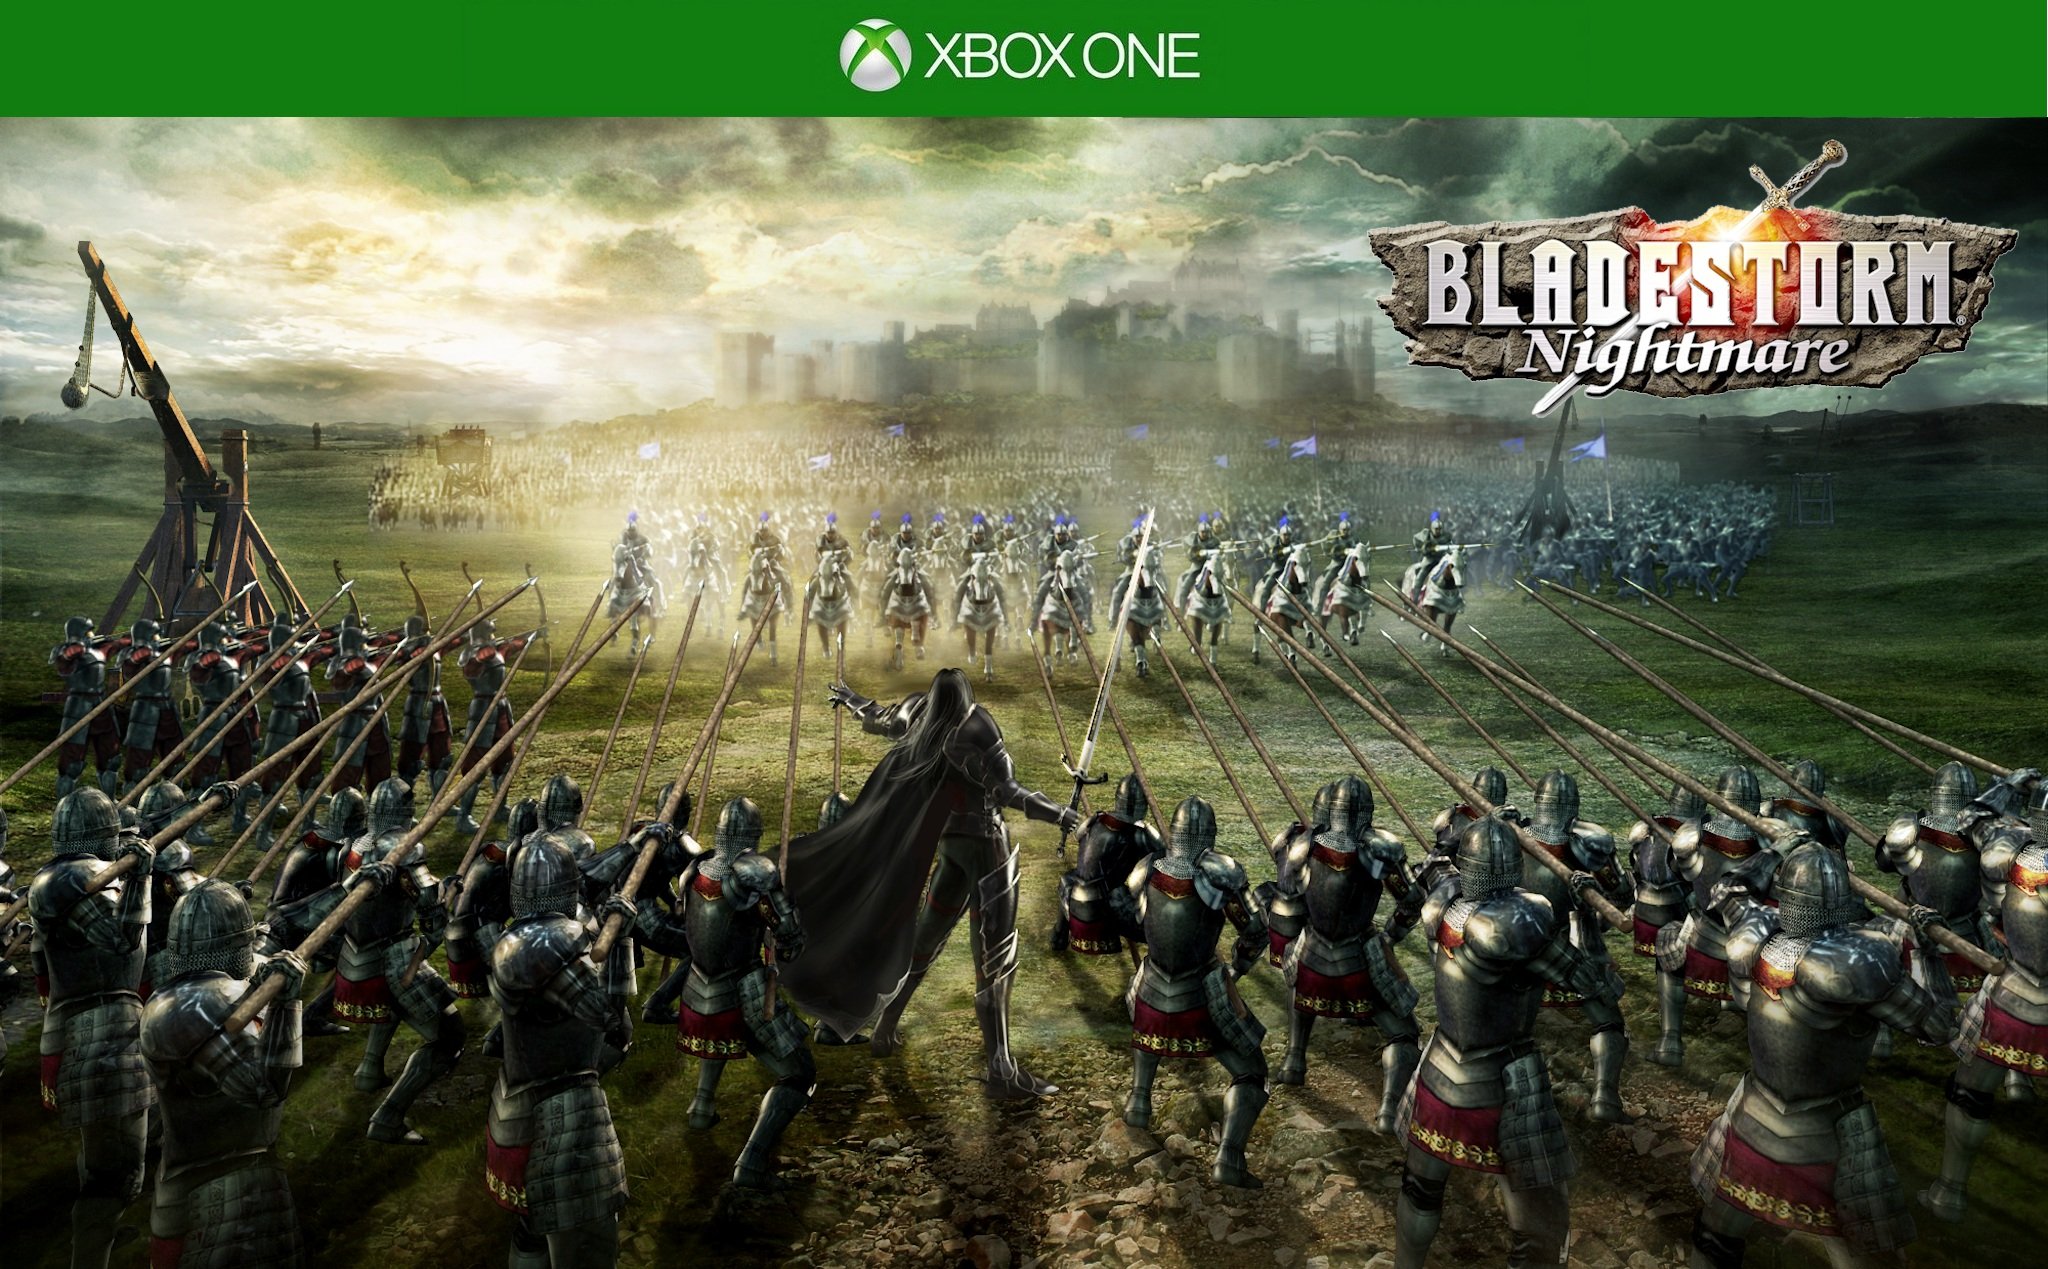 BladeStorm-Nightmare-Armies-Charging-Xbox-One.jpg